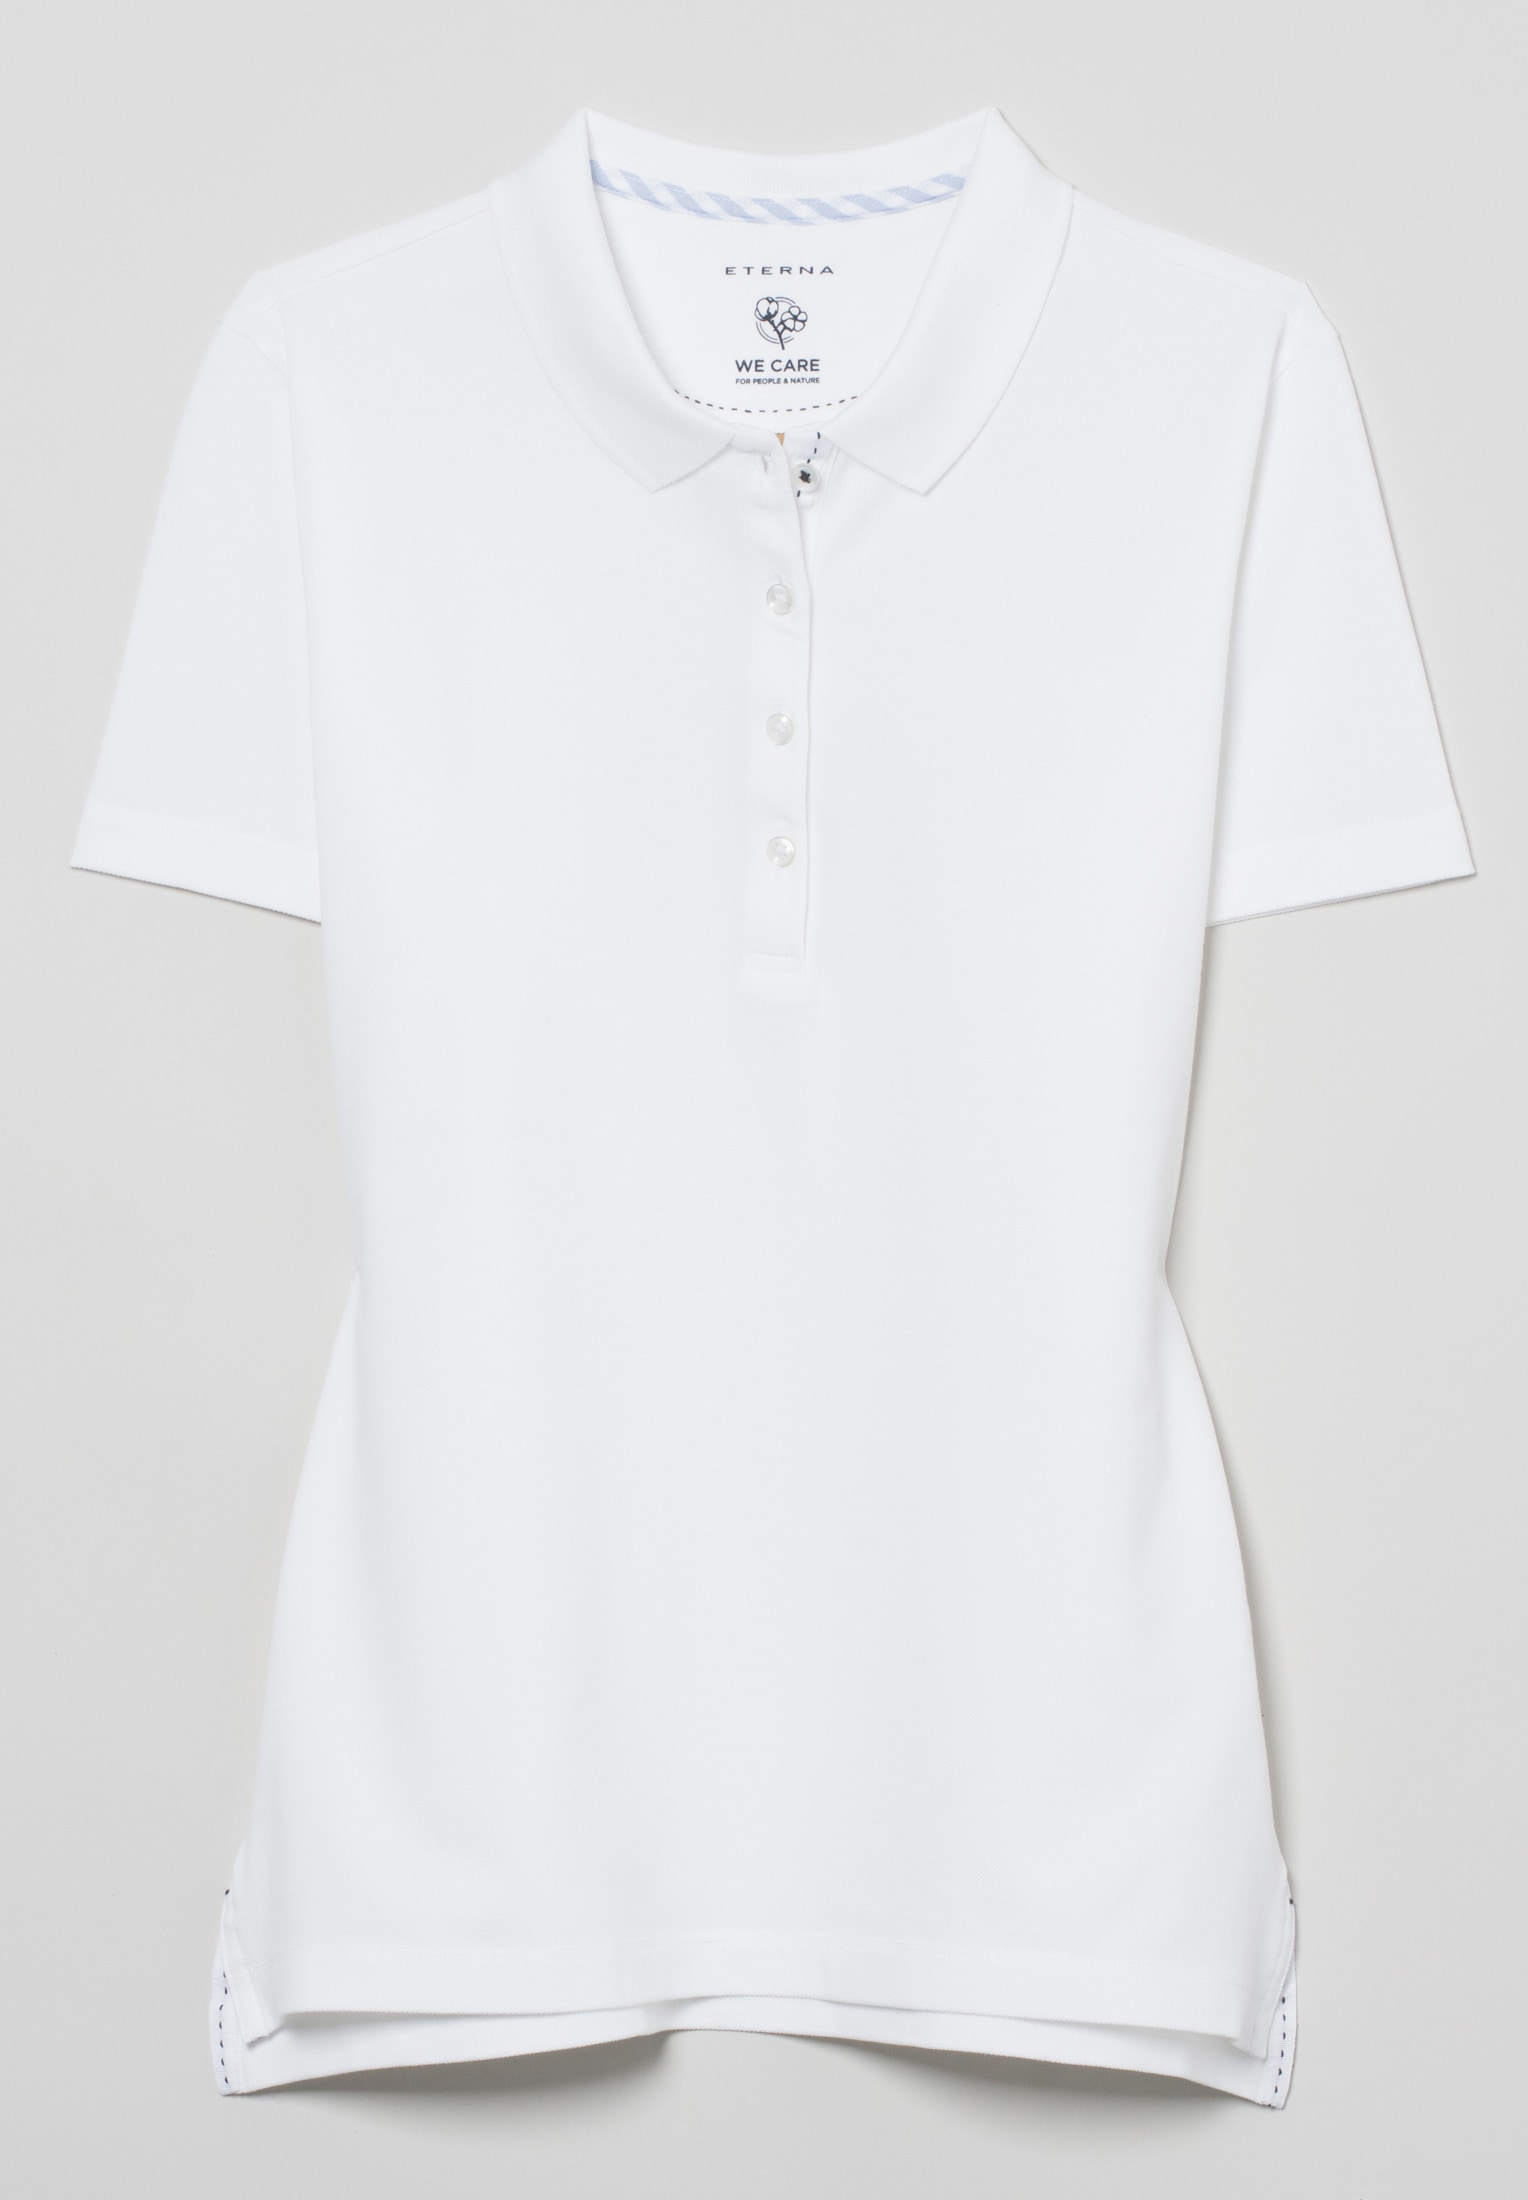 Poloshirt in weiß unifarben | M 2SP00006-00-01-M-1/2 Kurzarm | | weiß 